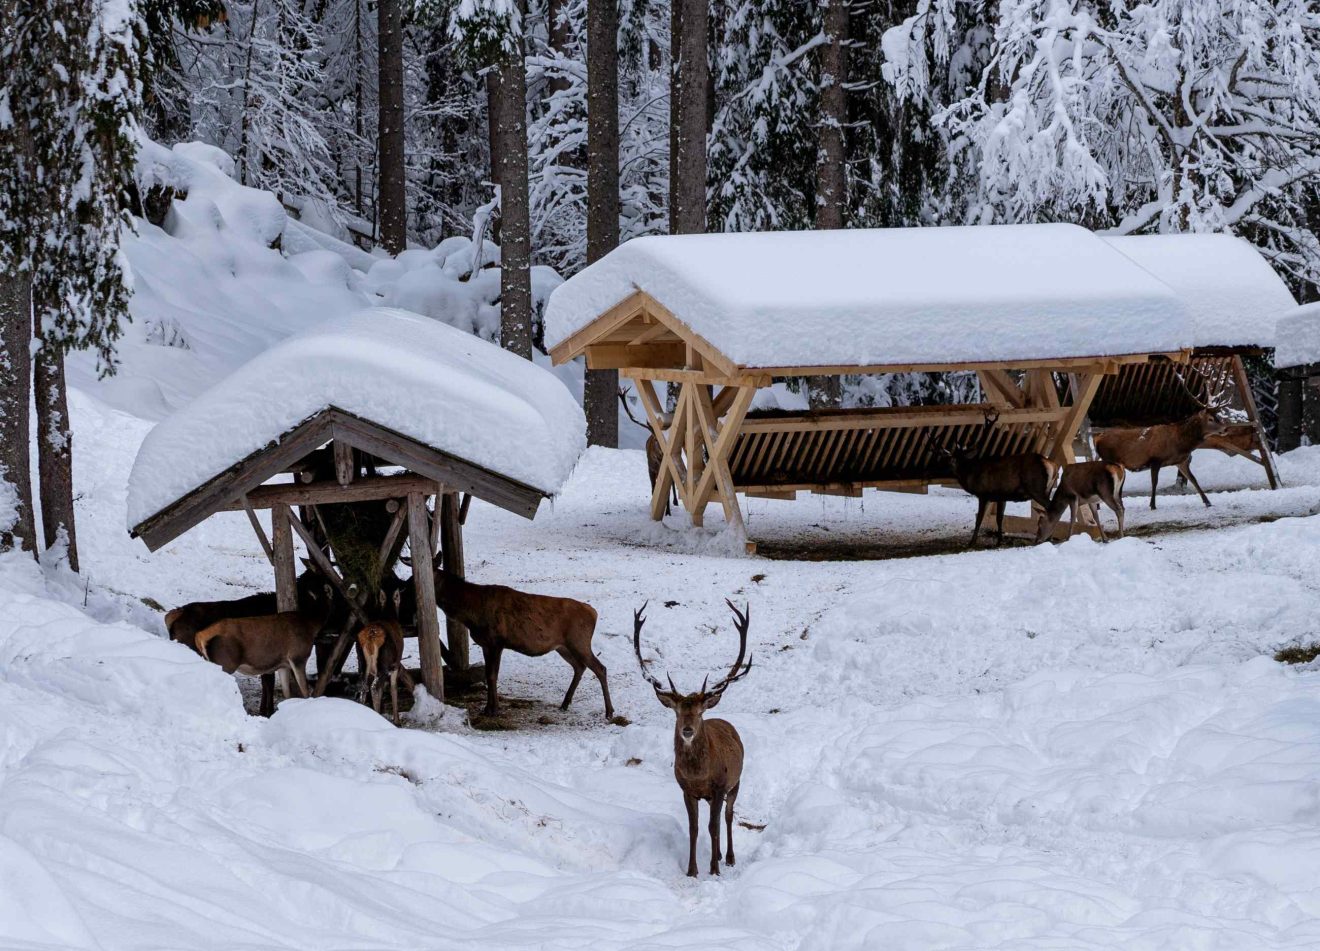 Hirsche an einer winterlichen Fütterung im dick schneebedeckten Wald